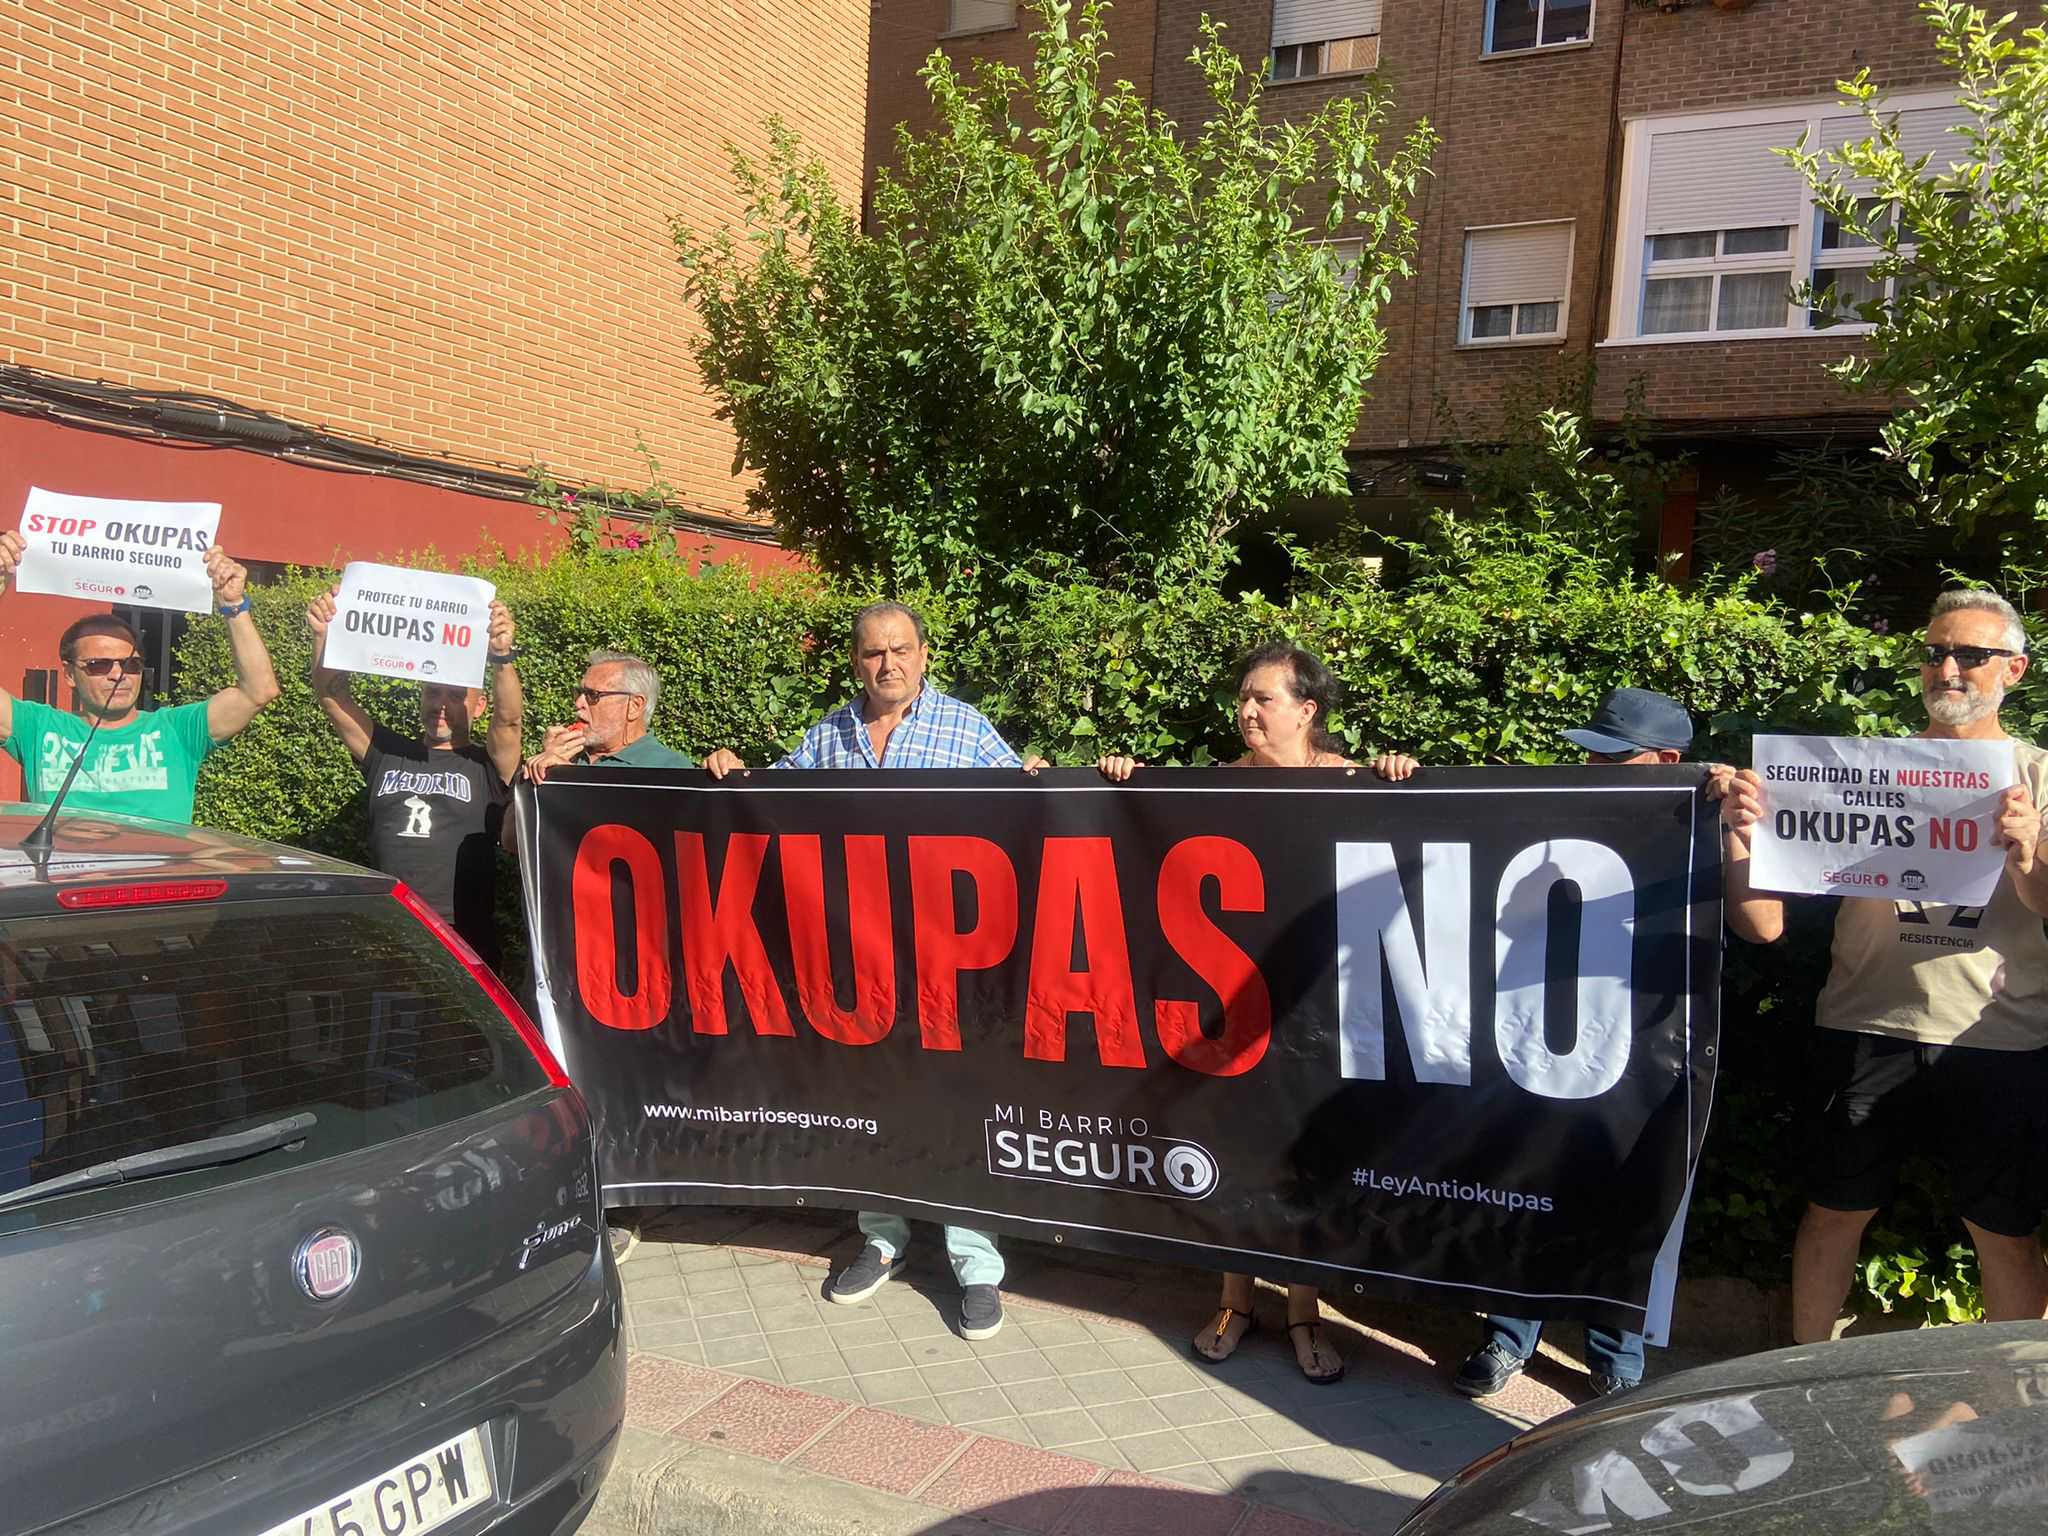 Protesta contra okupas en una vivienda de Fuenlabrada (Madrid).